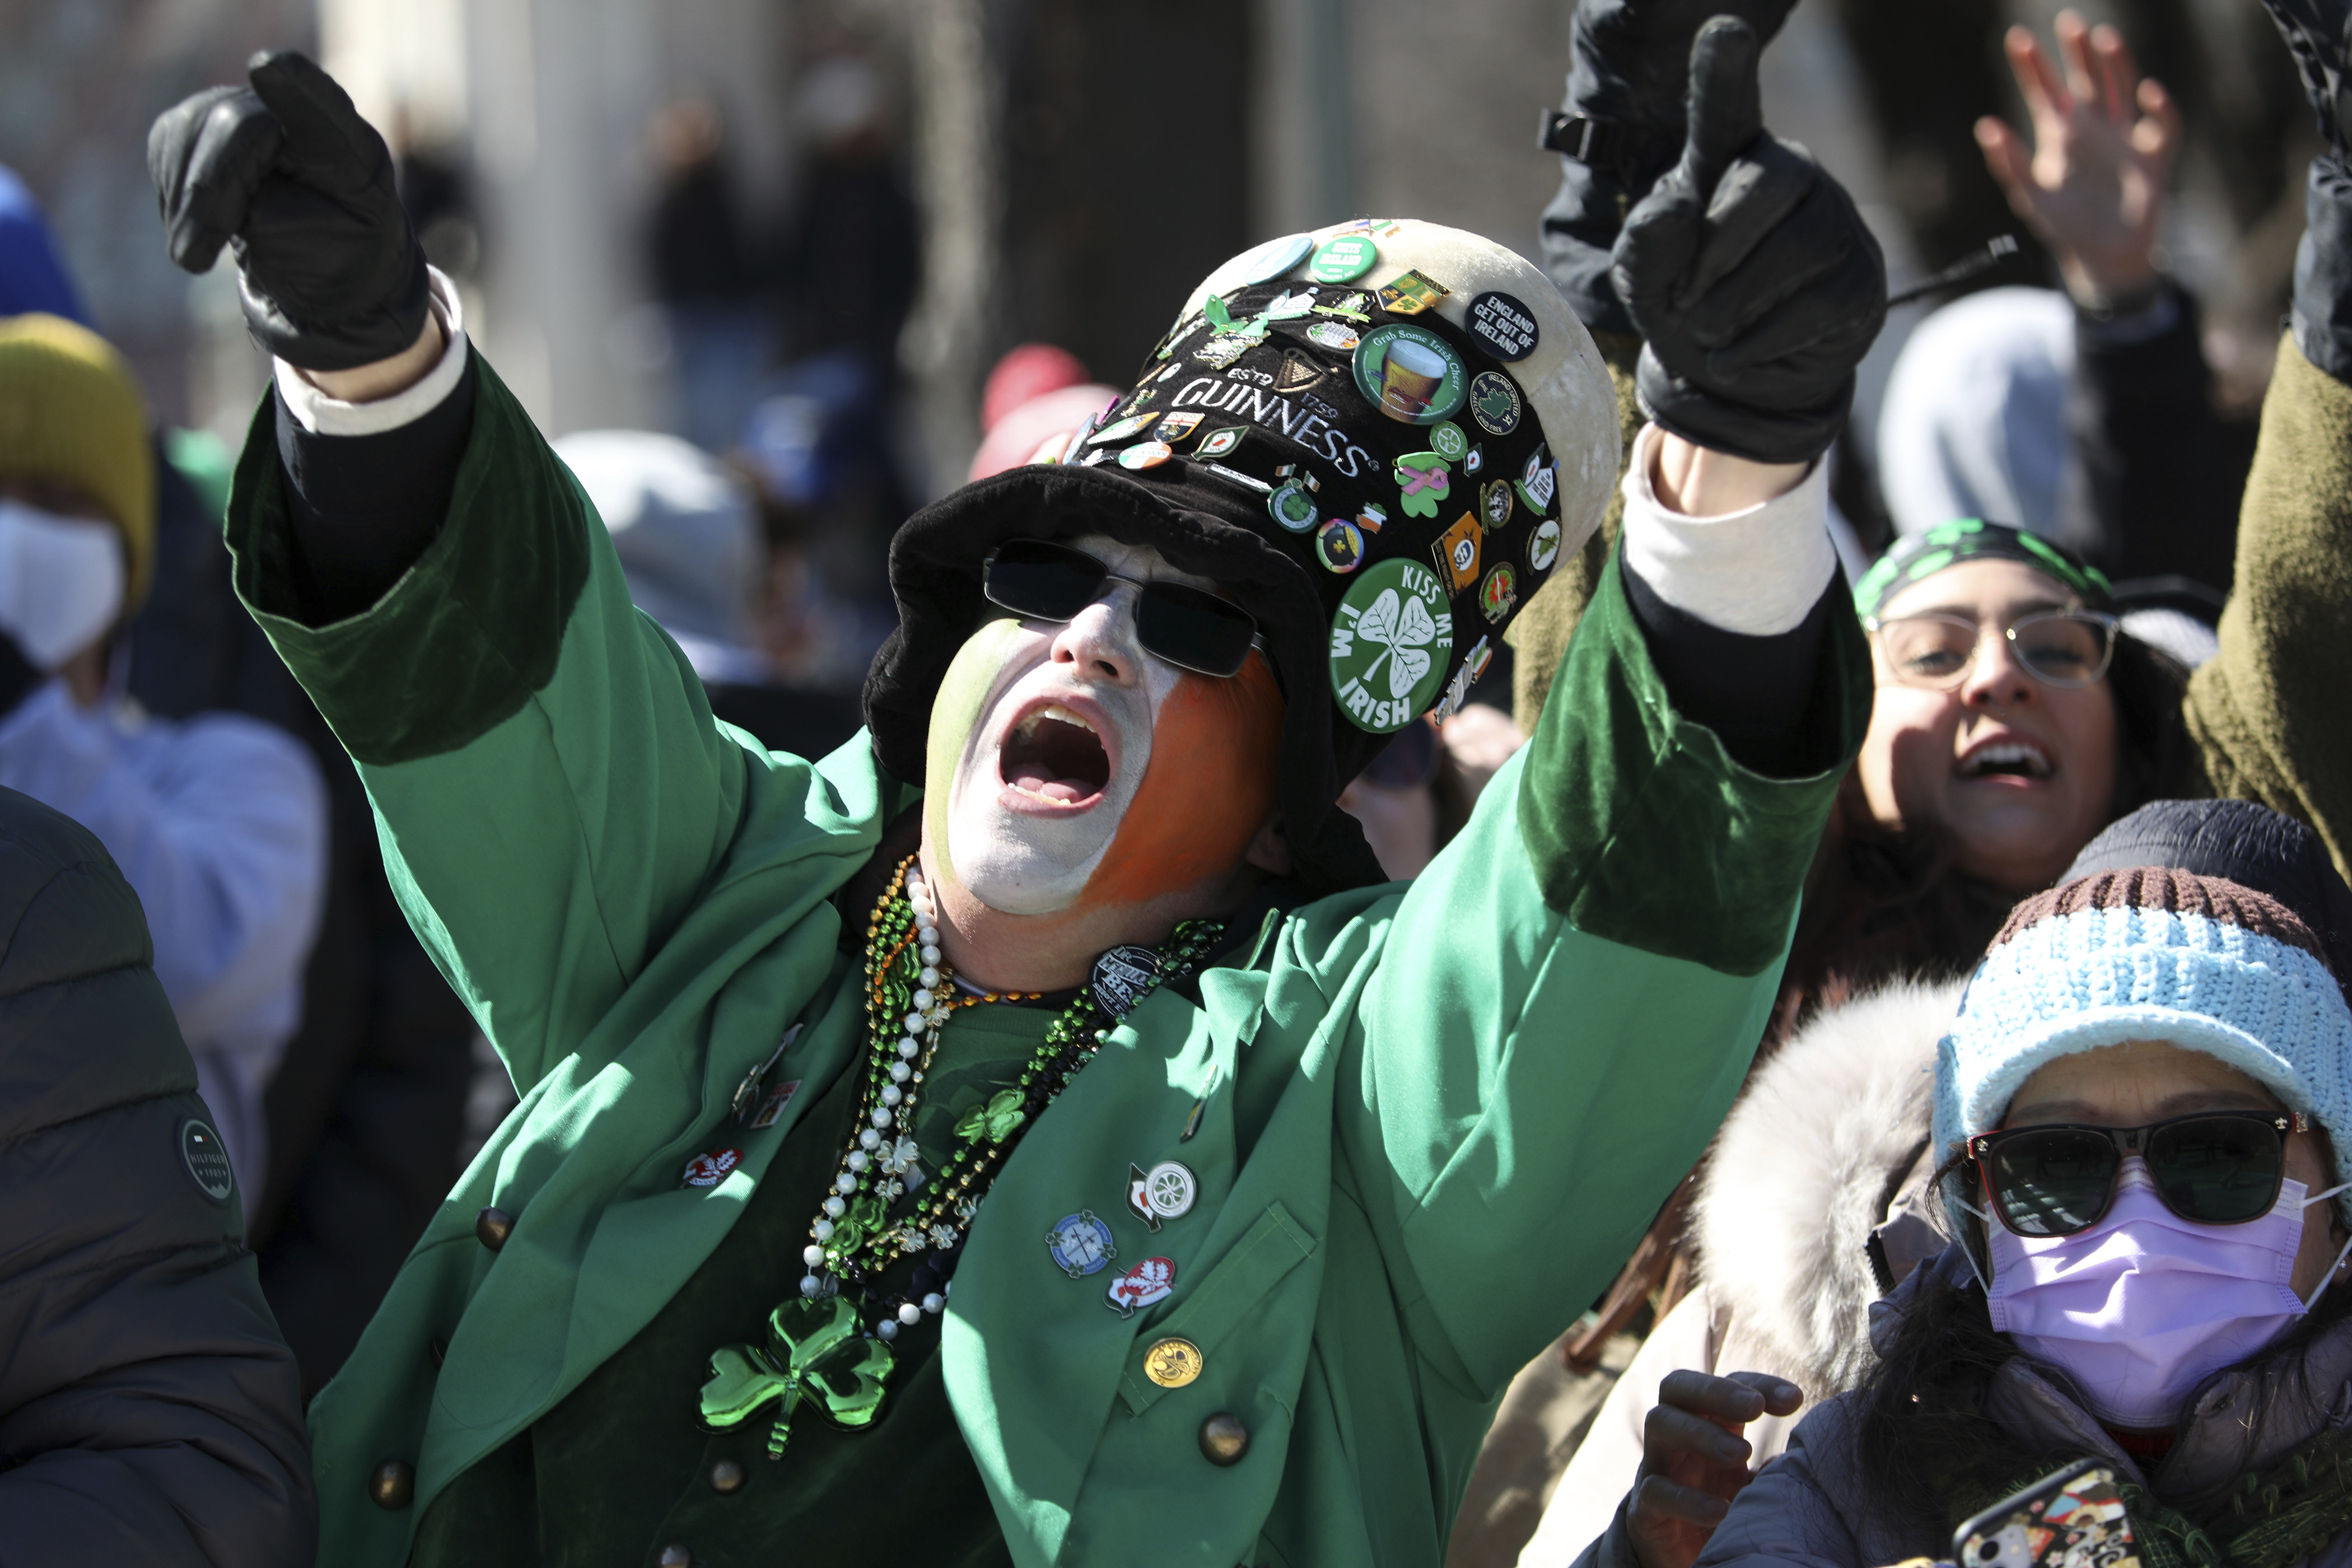 Celebrating St. Patrick's Day Parades in the U.S.